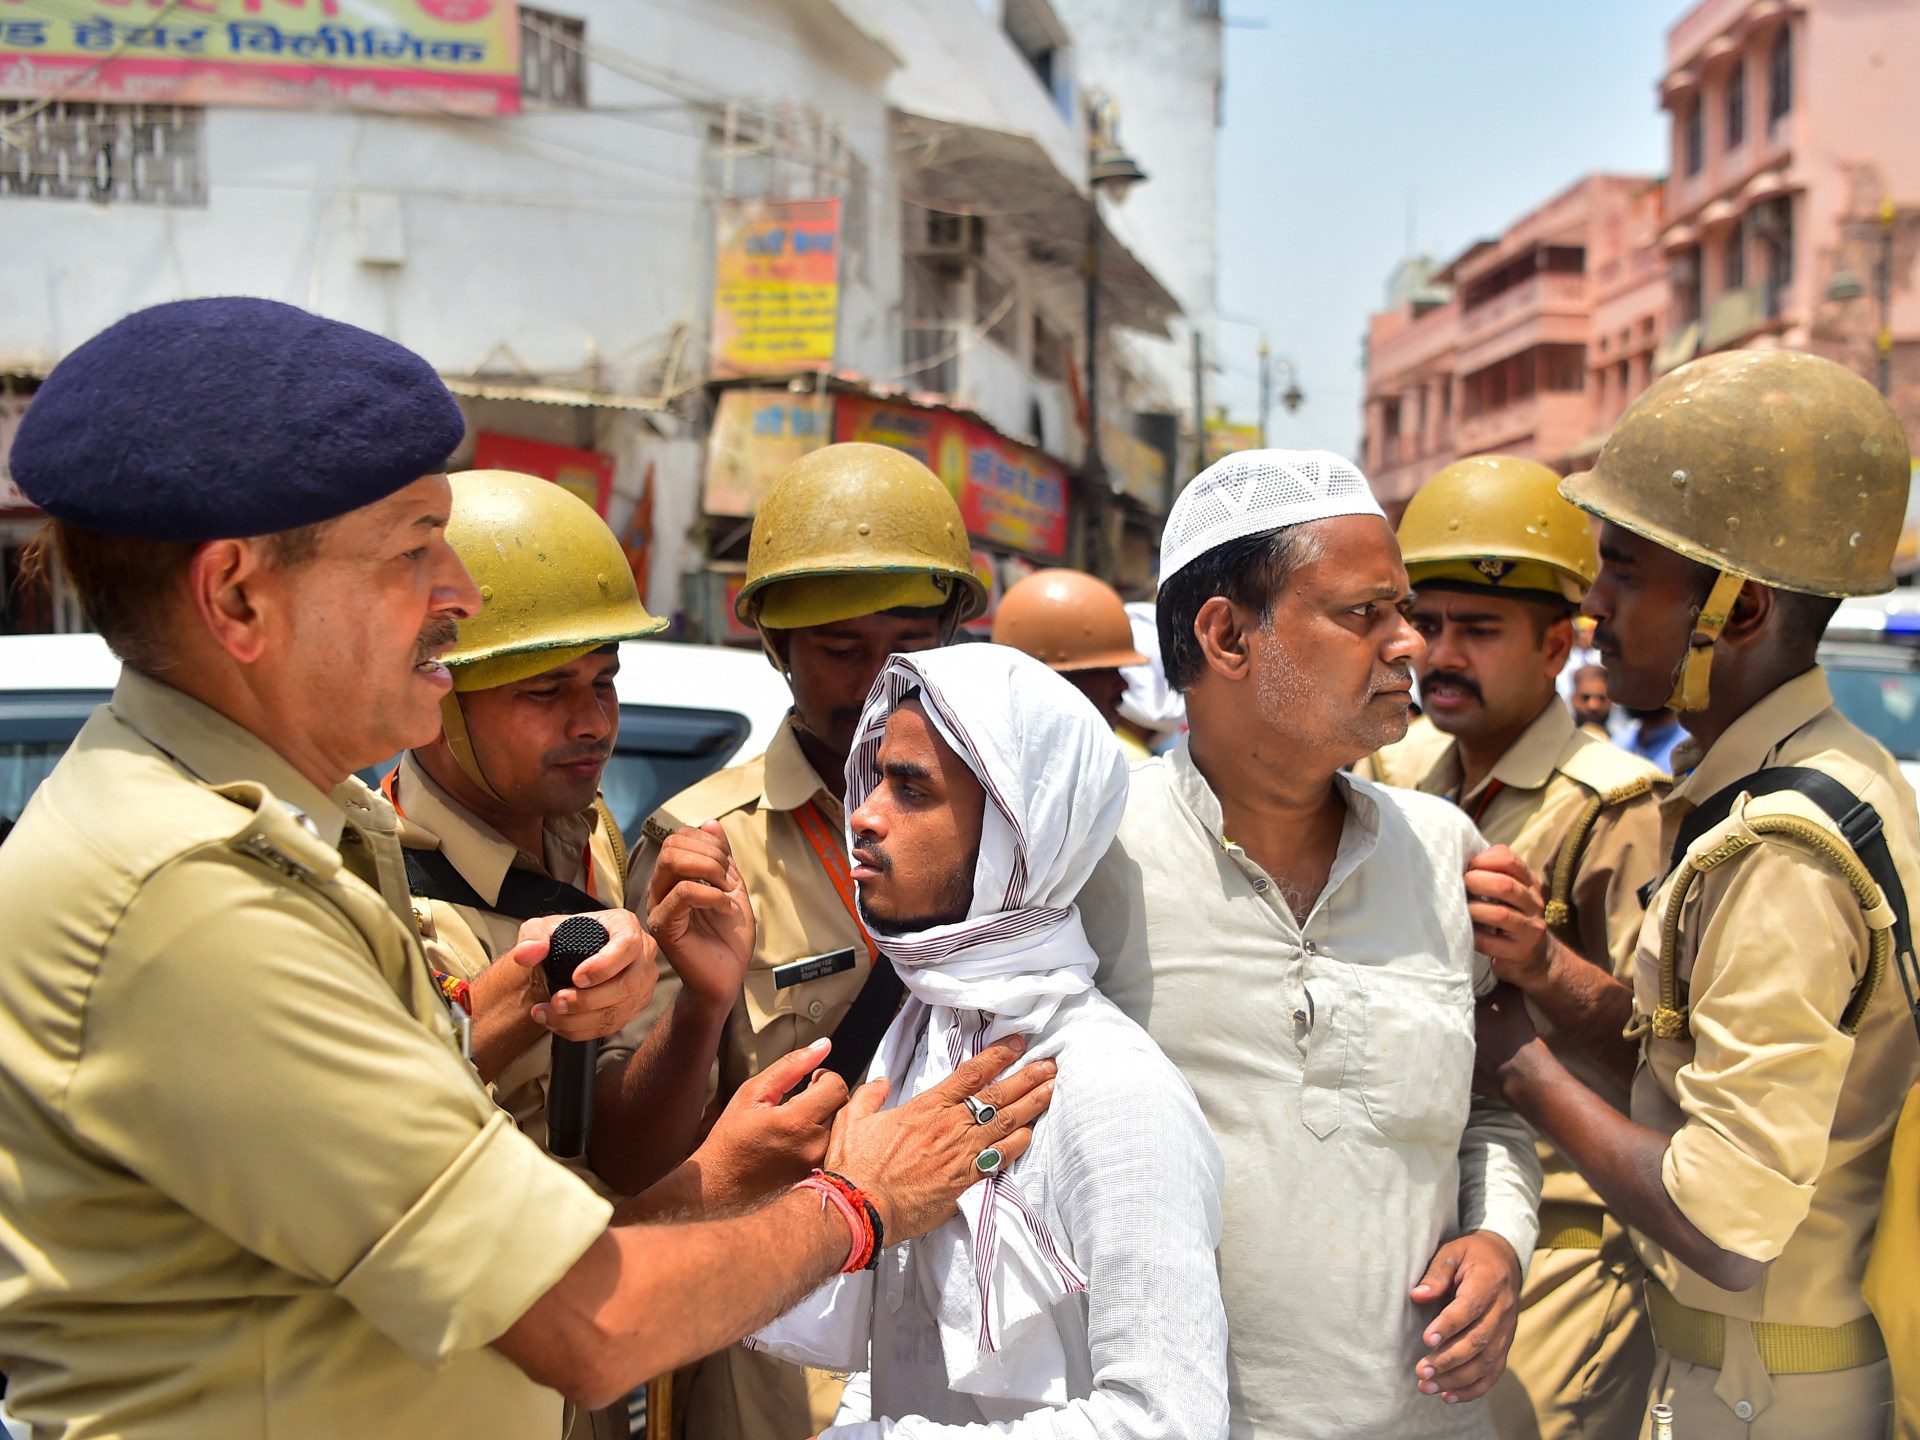 خبراء أمميون يحضون الهند على إنهاء الهجمات على الأقليات | أخبار – البوكس نيوز